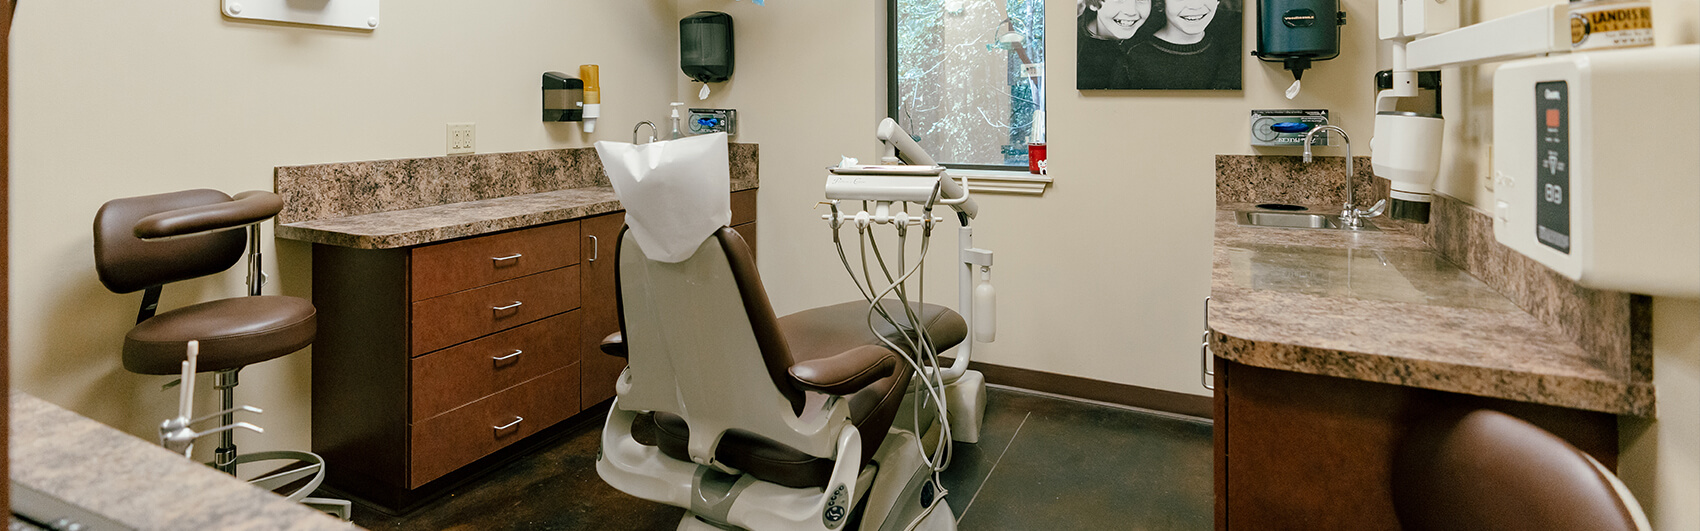 dental work station